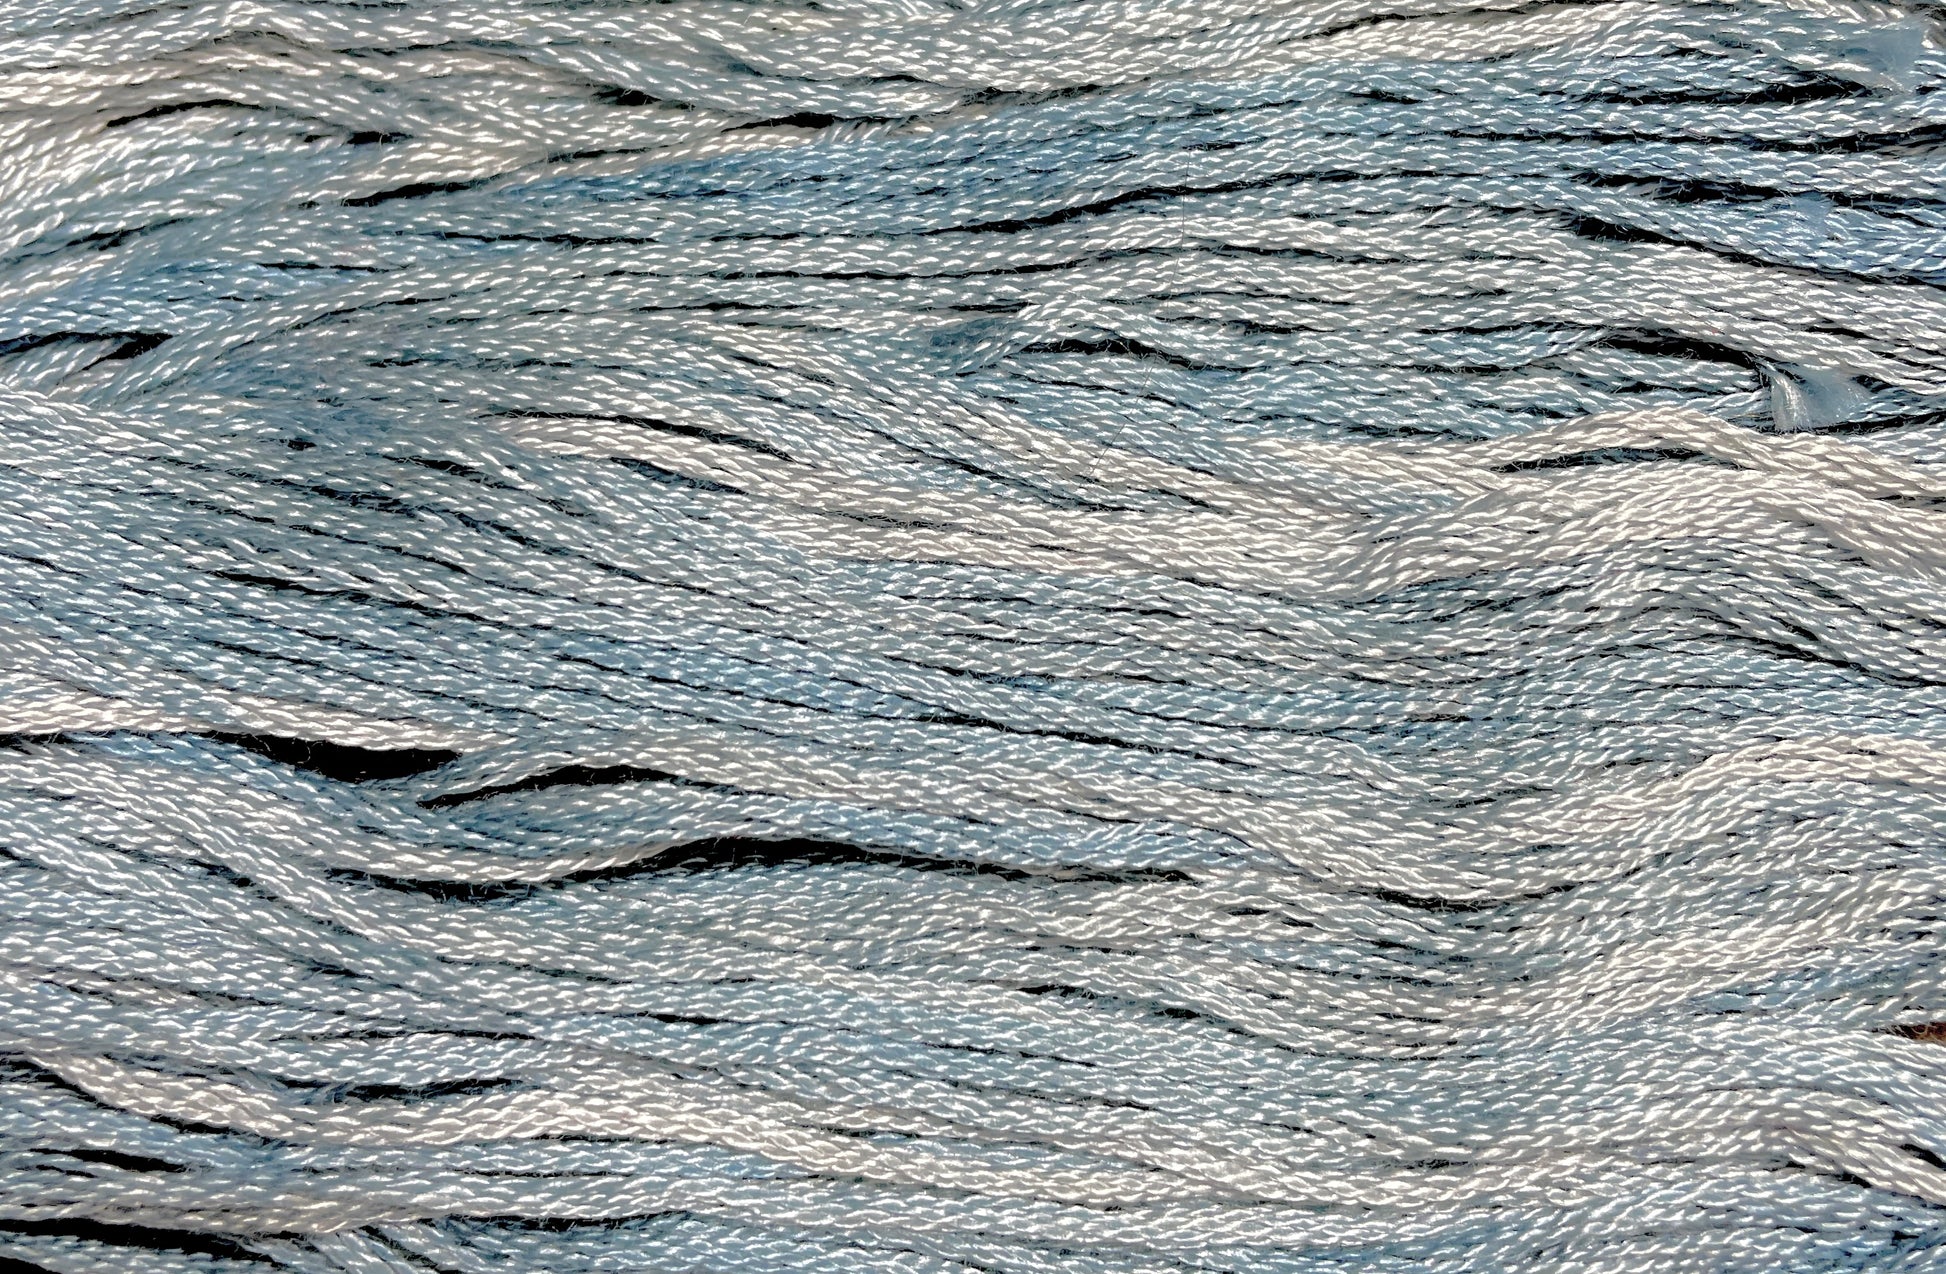 Cornflower - Gentle Arts Cotton Thread - 5 yard Skein - Cross Stitch Floss, Thread & Floss, Thread & Floss, The Crafty Grimalkin - A Cross Stitch Store